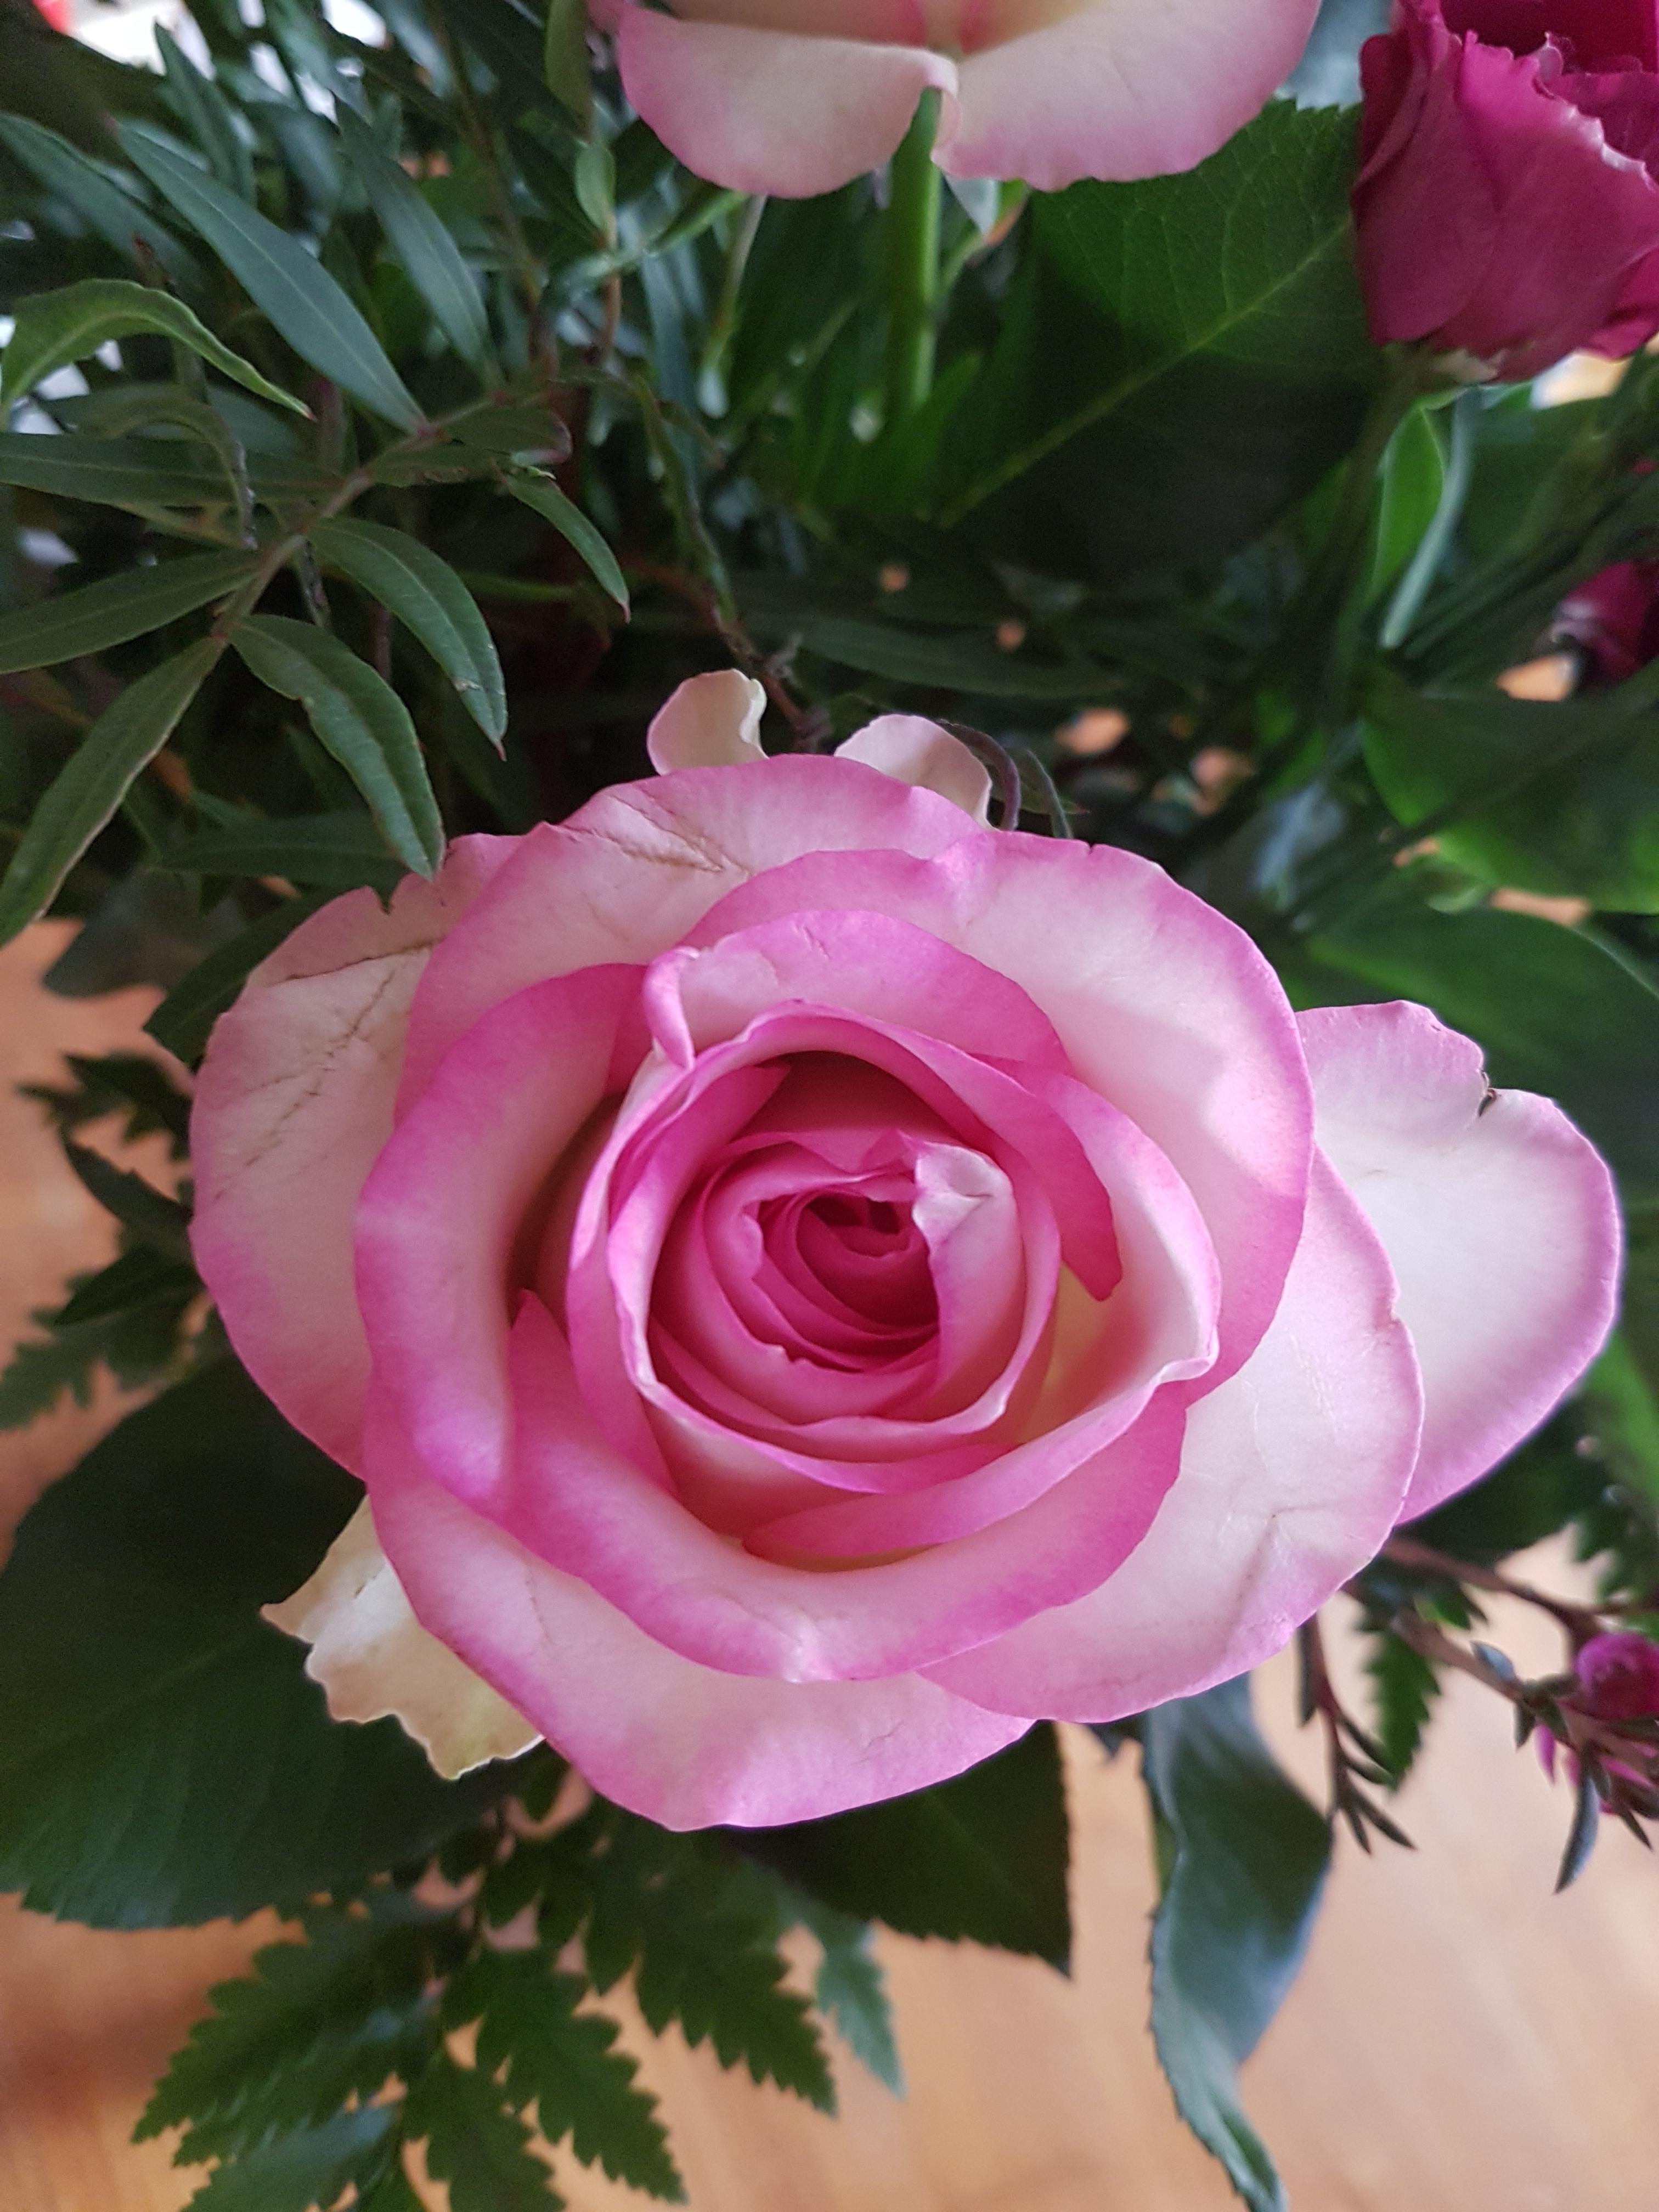 #Valentine #surprise
#rose #pink #Blumenstrauß 